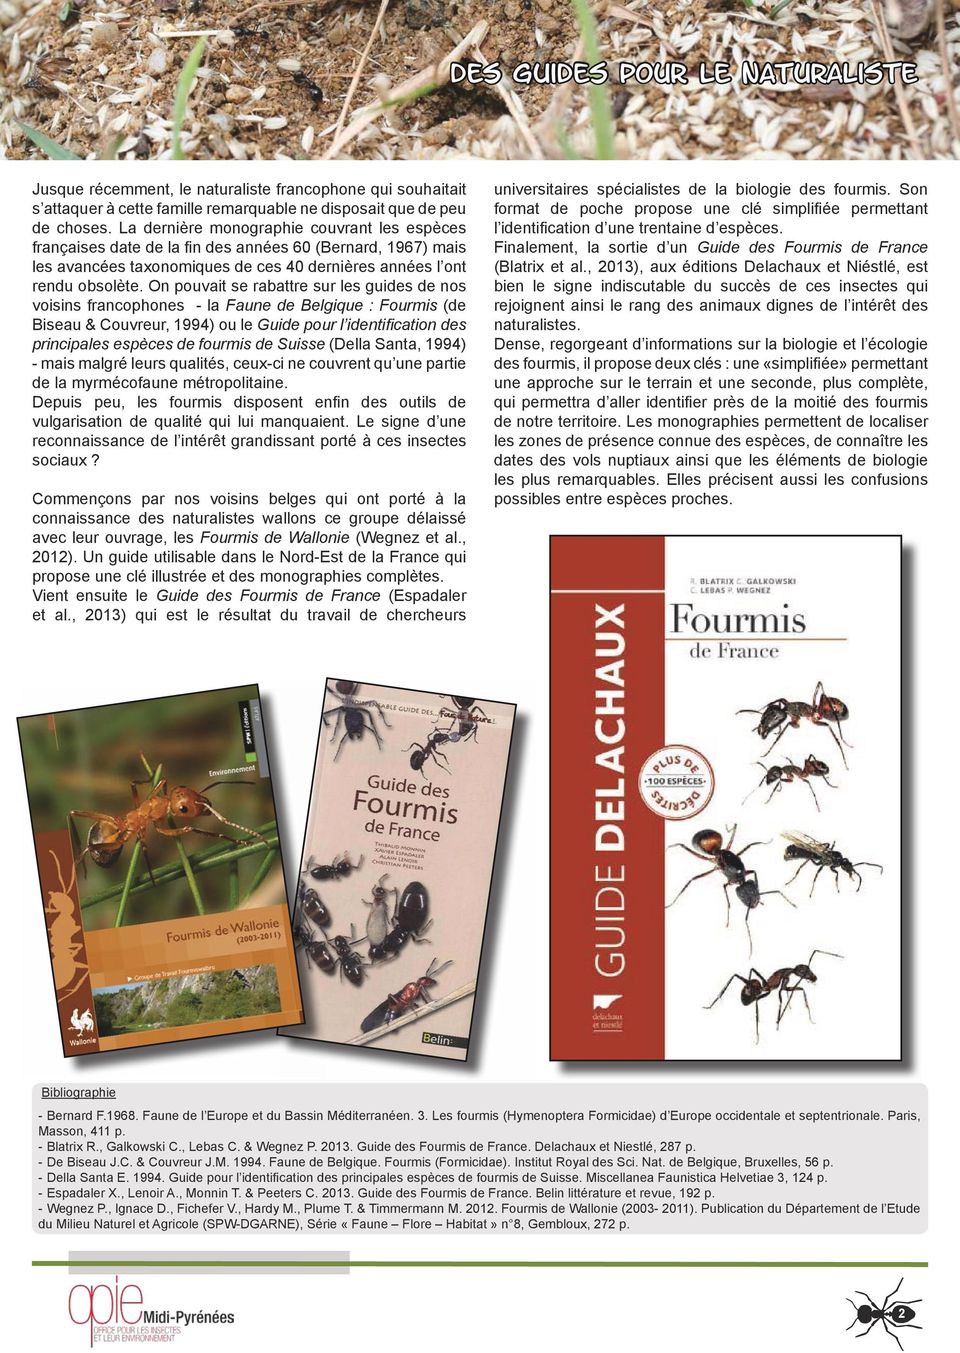 On pouvait se rabattre sur les guides de nos voisins francophones - la Faune de Belgique : Fourmis (de Biseau & Couvreur, 1994) ou le Guide pour l identification des principales espèces de fourmis de